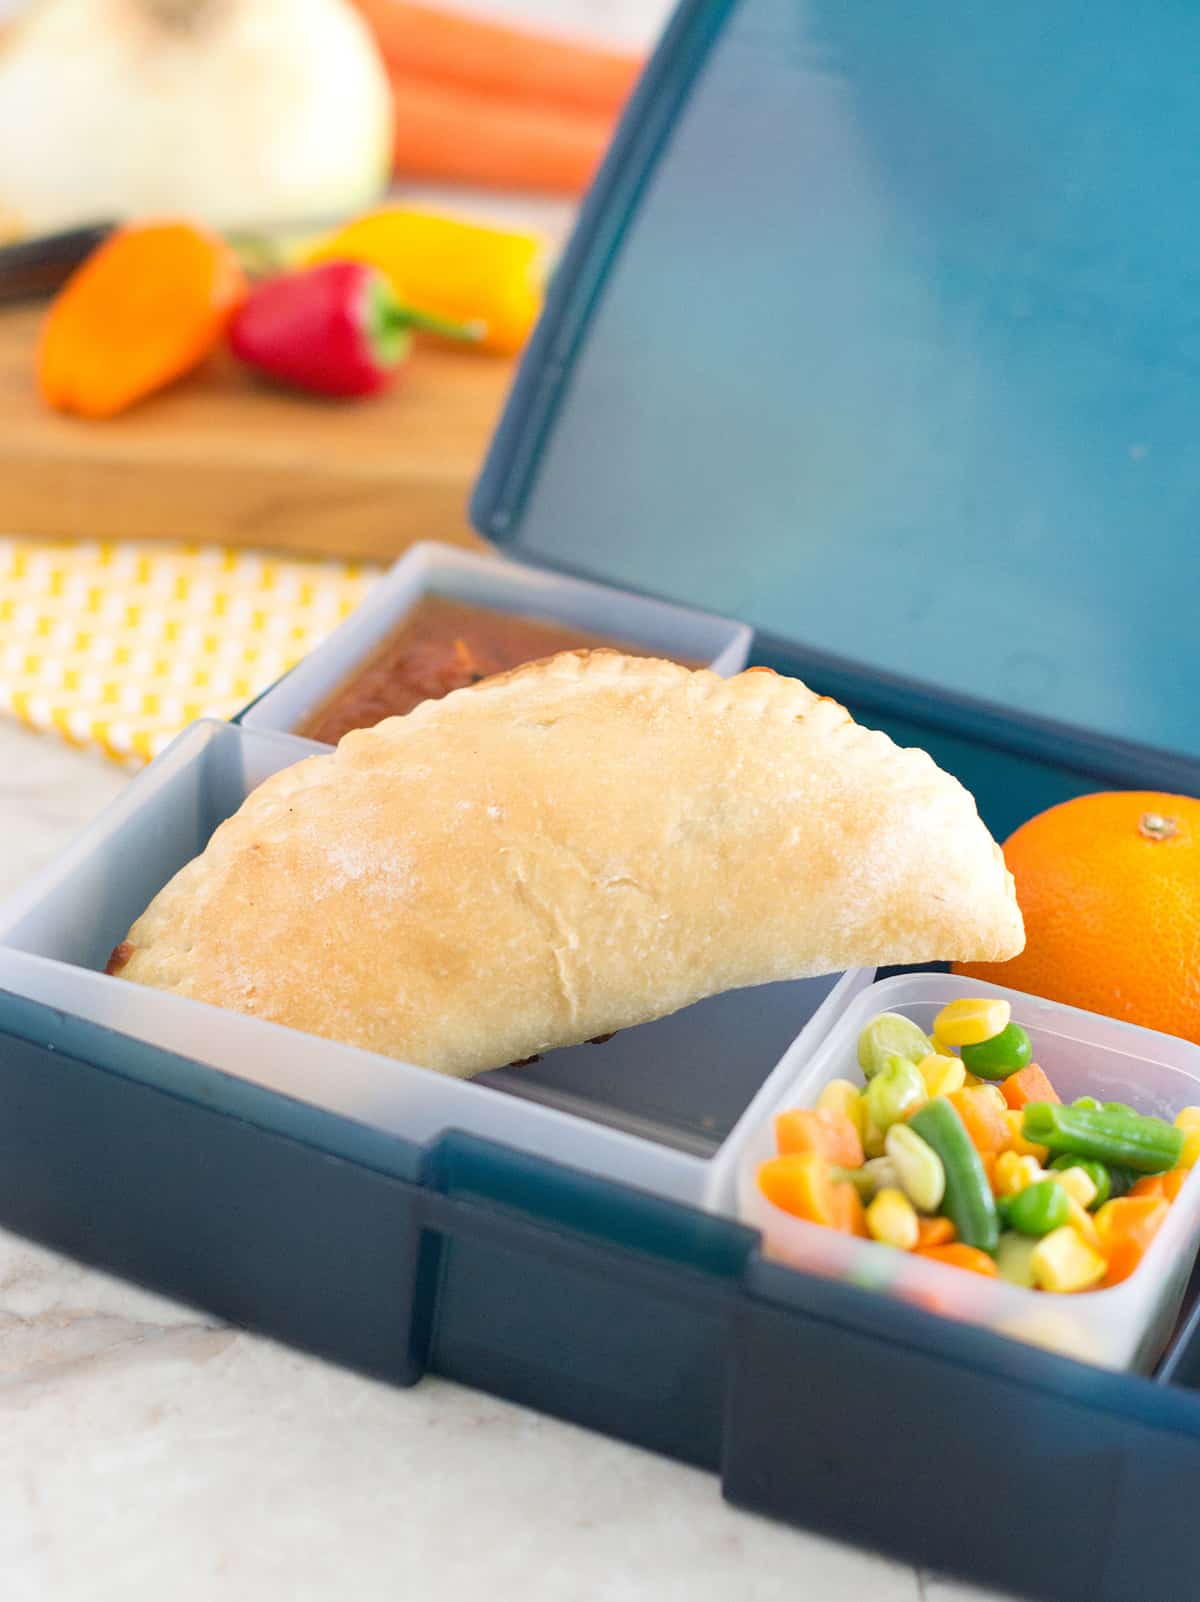 How To Make Lunchbox Empanadas